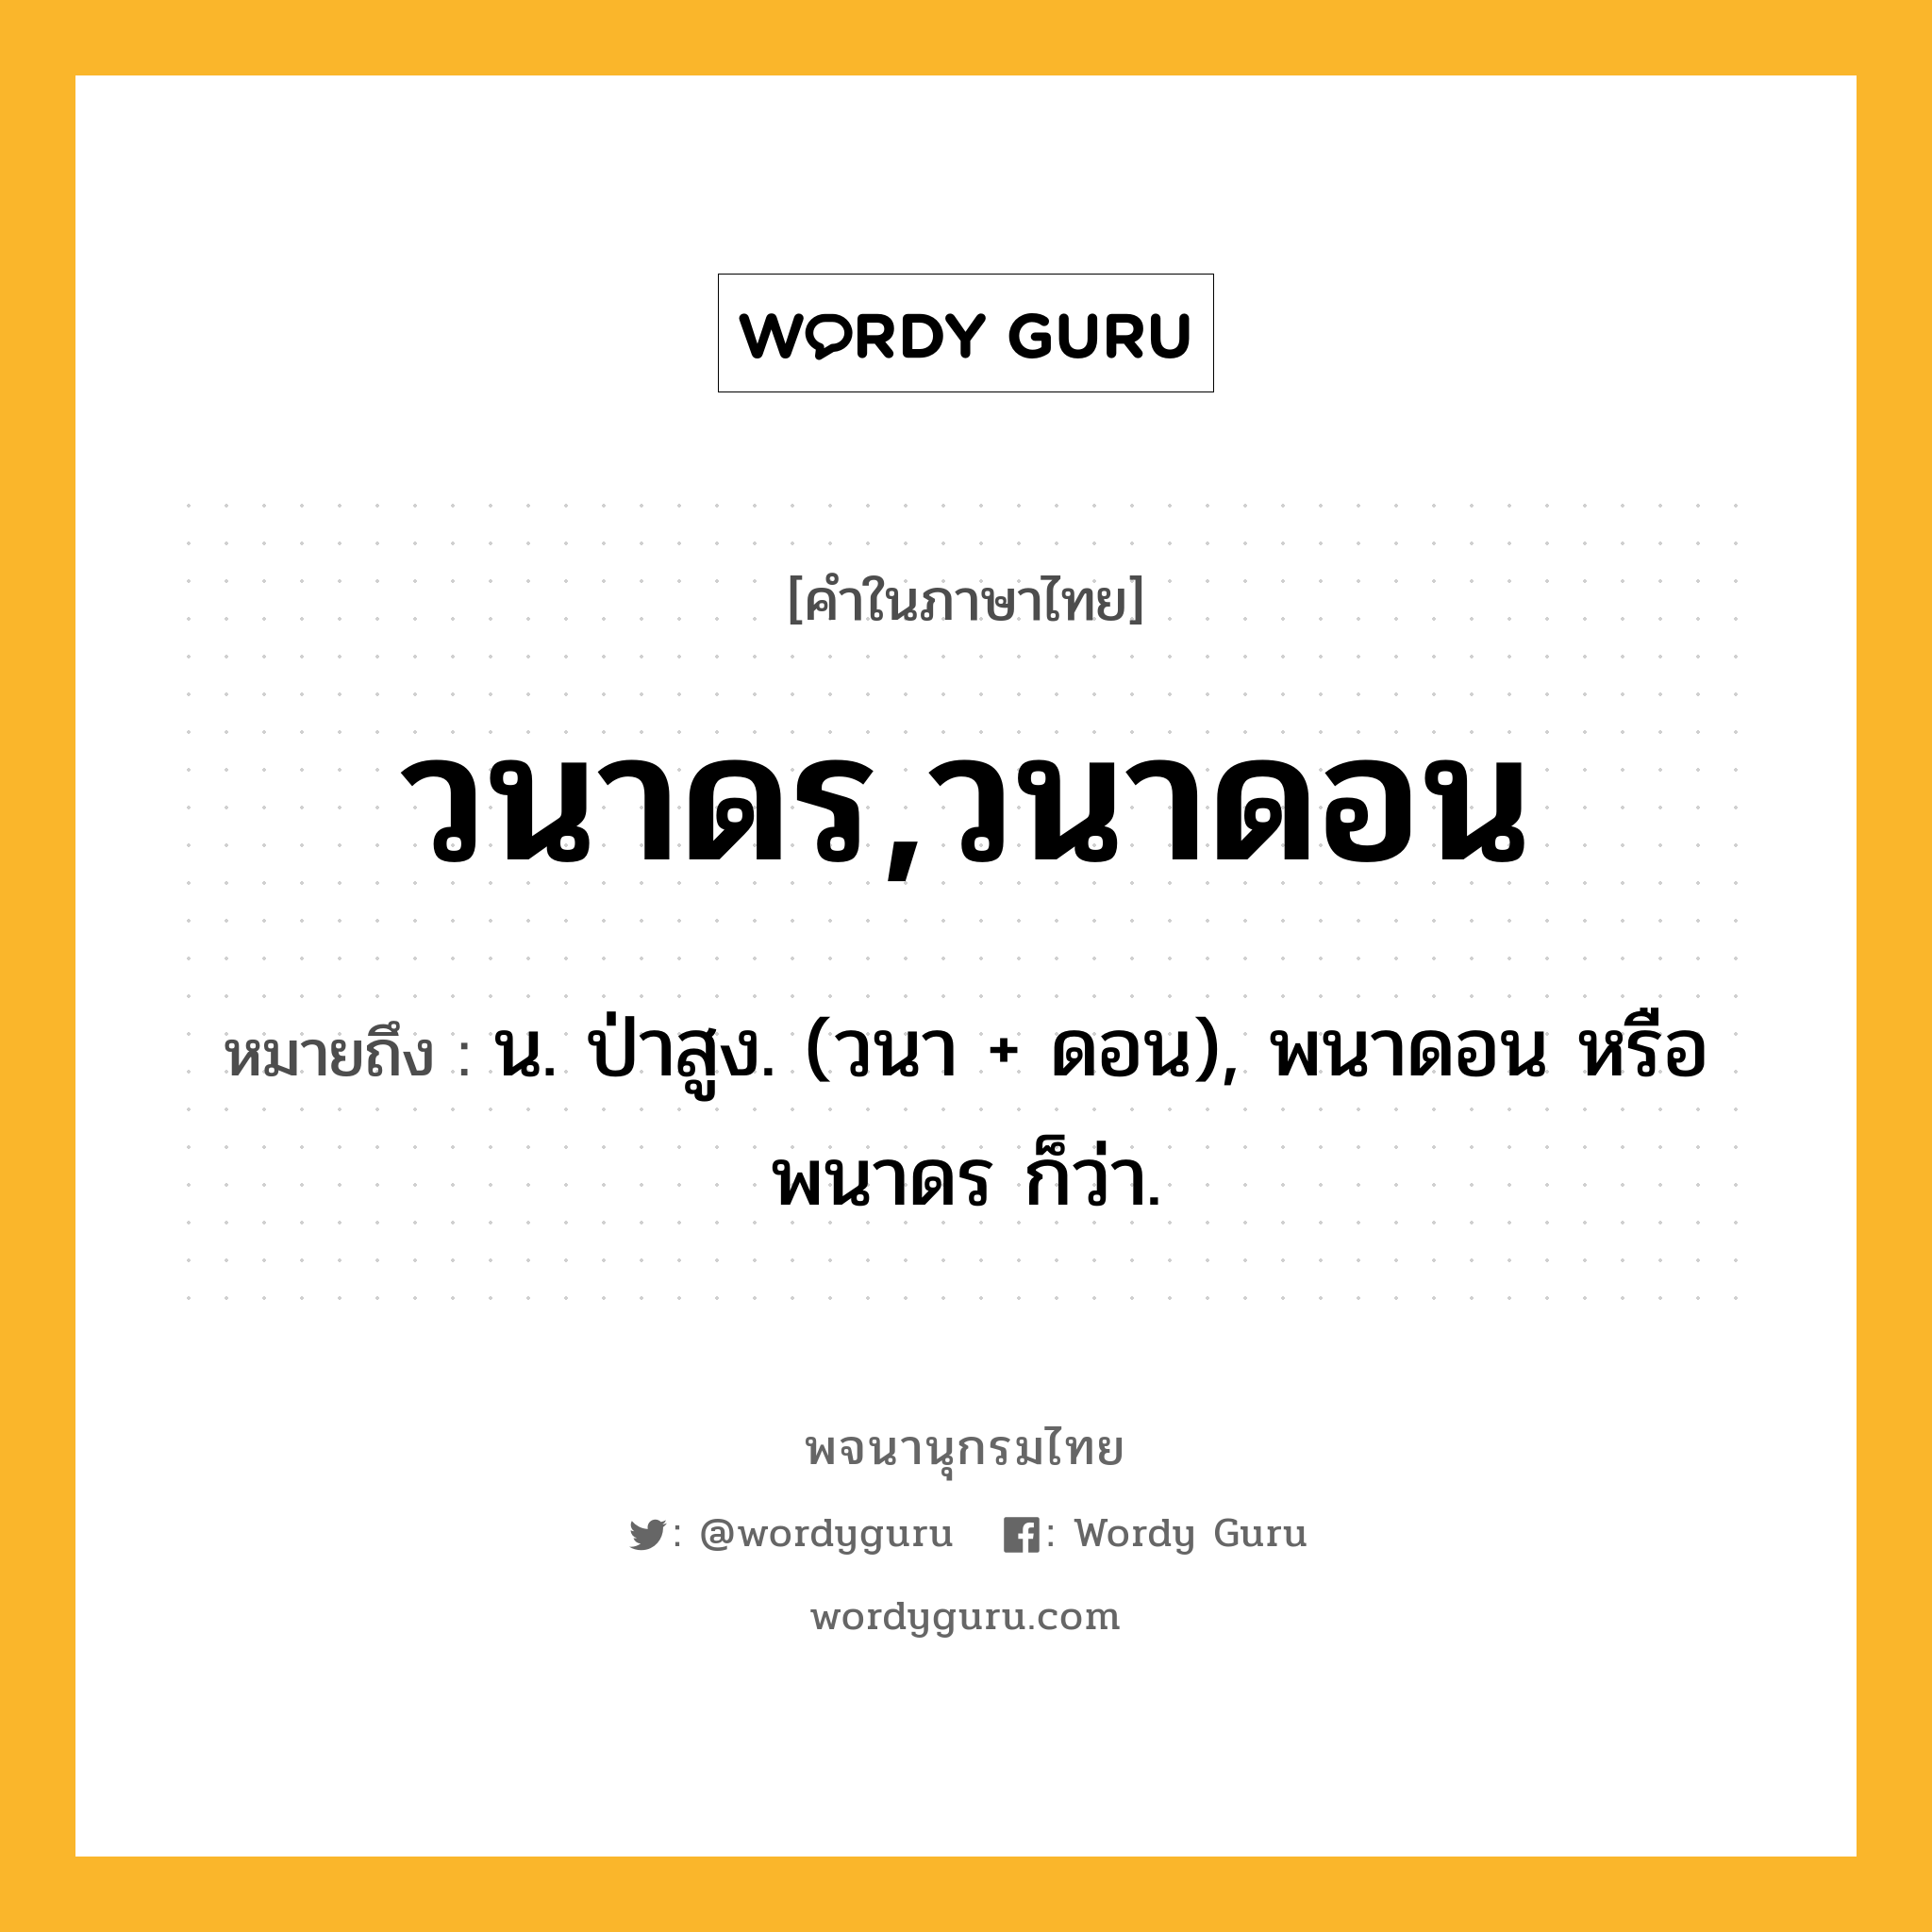 วนาดร,วนาดอน หมายถึงอะไร?, คำในภาษาไทย วนาดร,วนาดอน หมายถึง น. ป่าสูง. (วนา + ดอน), พนาดอน หรือ พนาดร ก็ว่า.